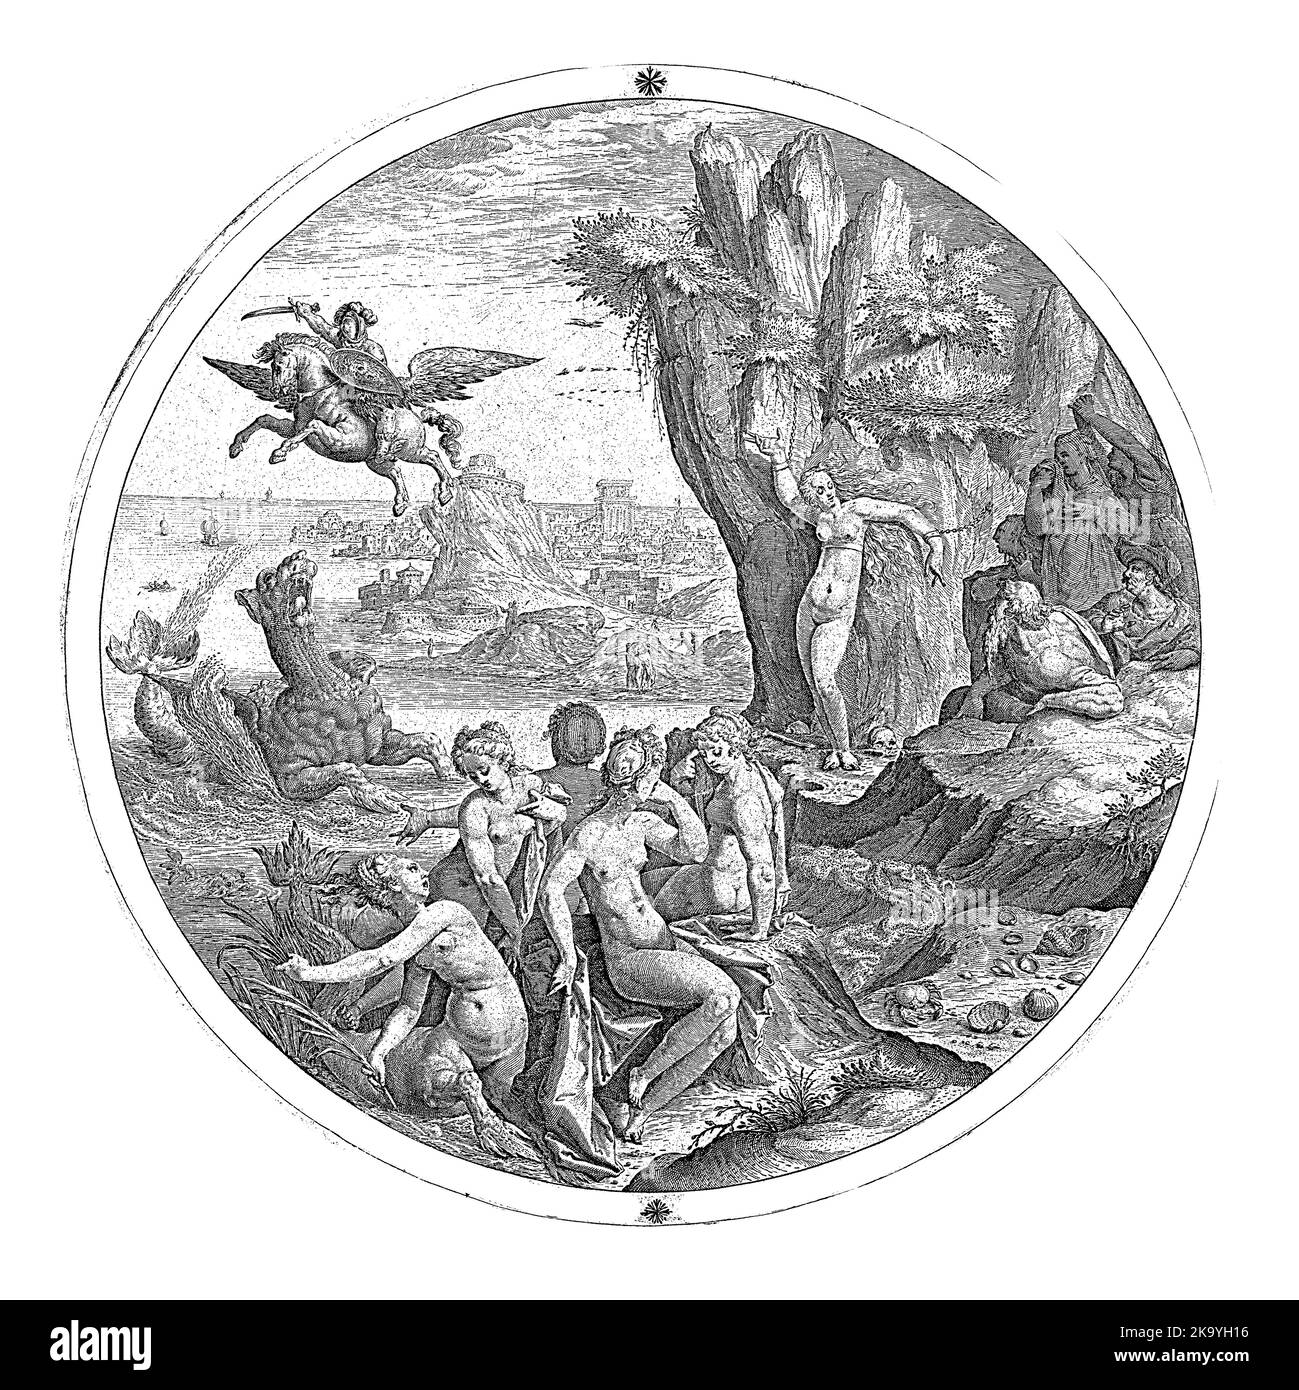 Représentation ronde de Perseus se précipitant sur un cheval ailé pour tuer le monstre marin qui menace Andromeda, enchaîné à un rocher. Un certain nombre de cl Banque D'Images